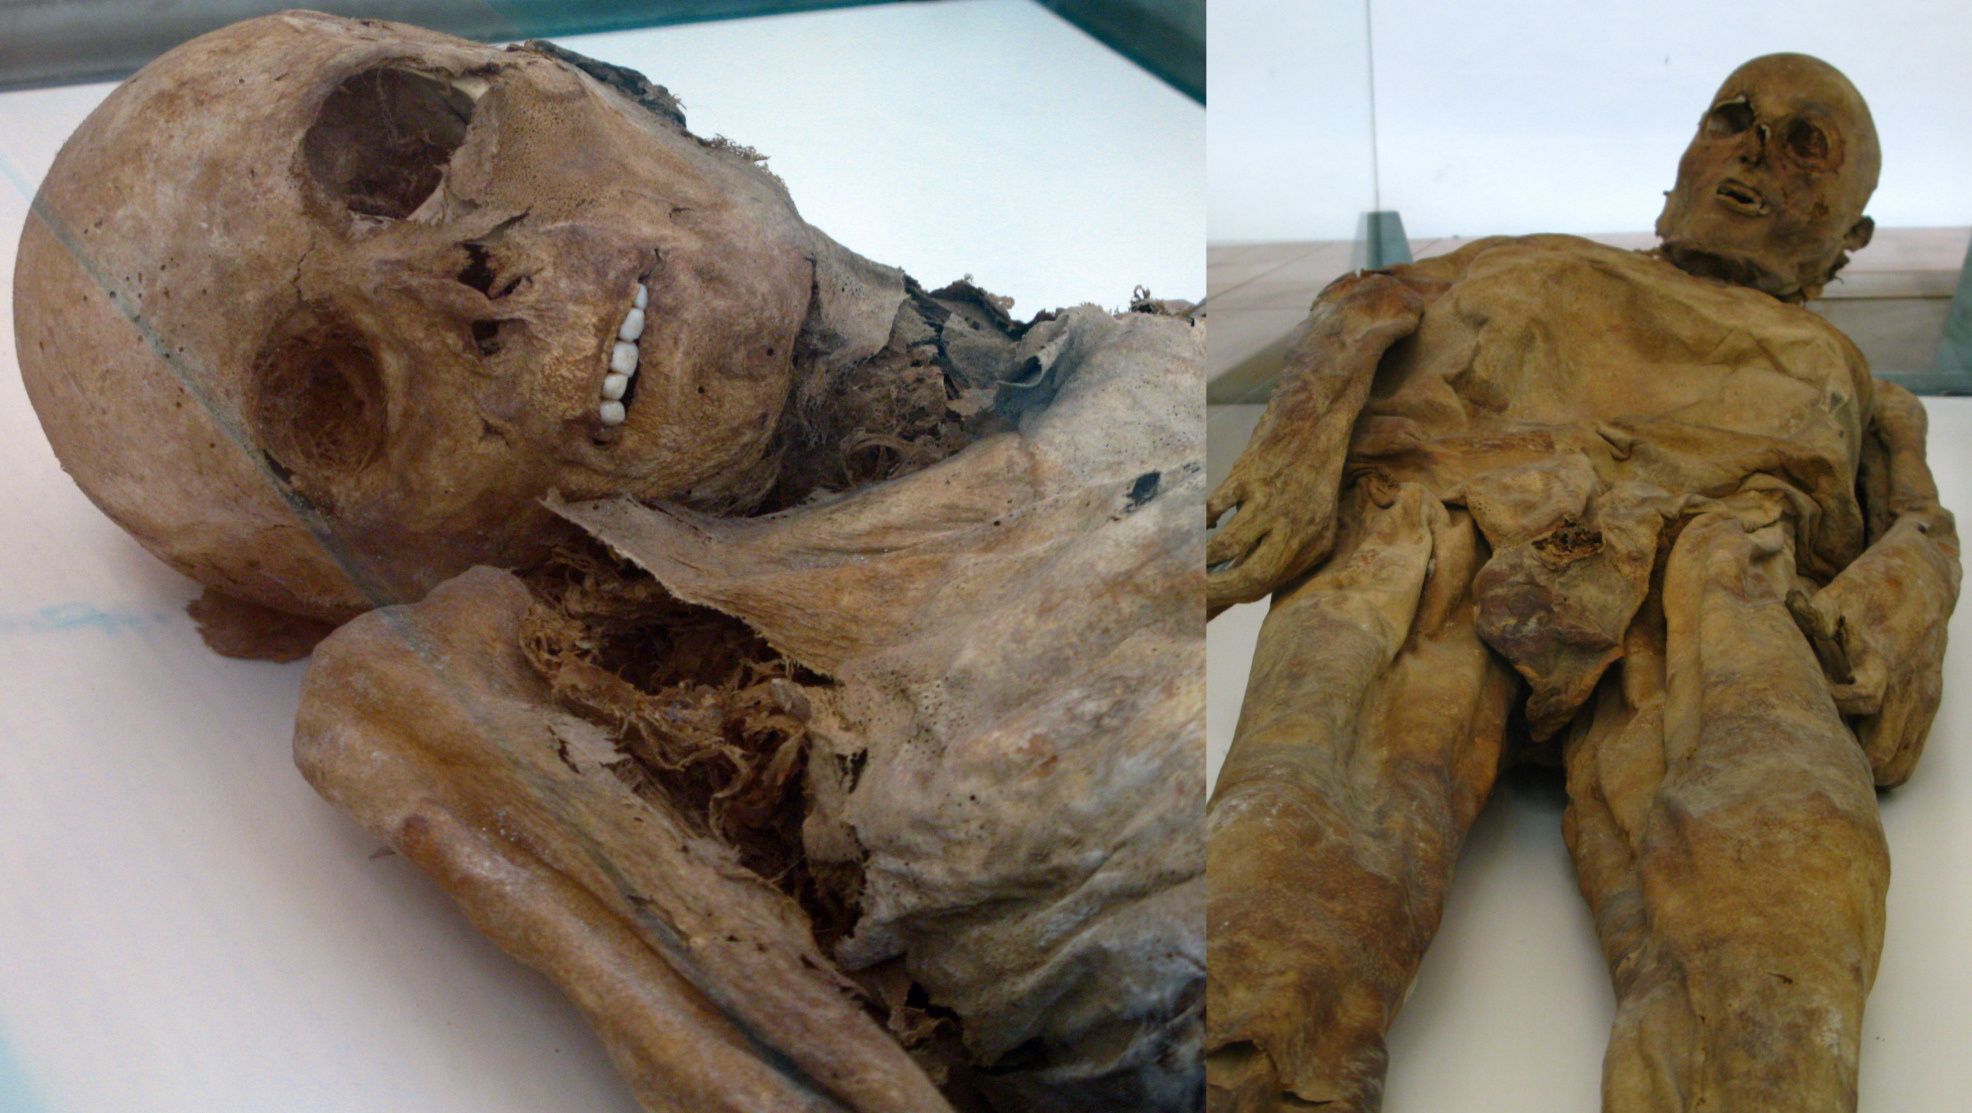 Două dintre mumiile Venzone conservate înfiorător. Cu descompunerea normală, dinții tind să cadă la câteva săptămâni după moarte.